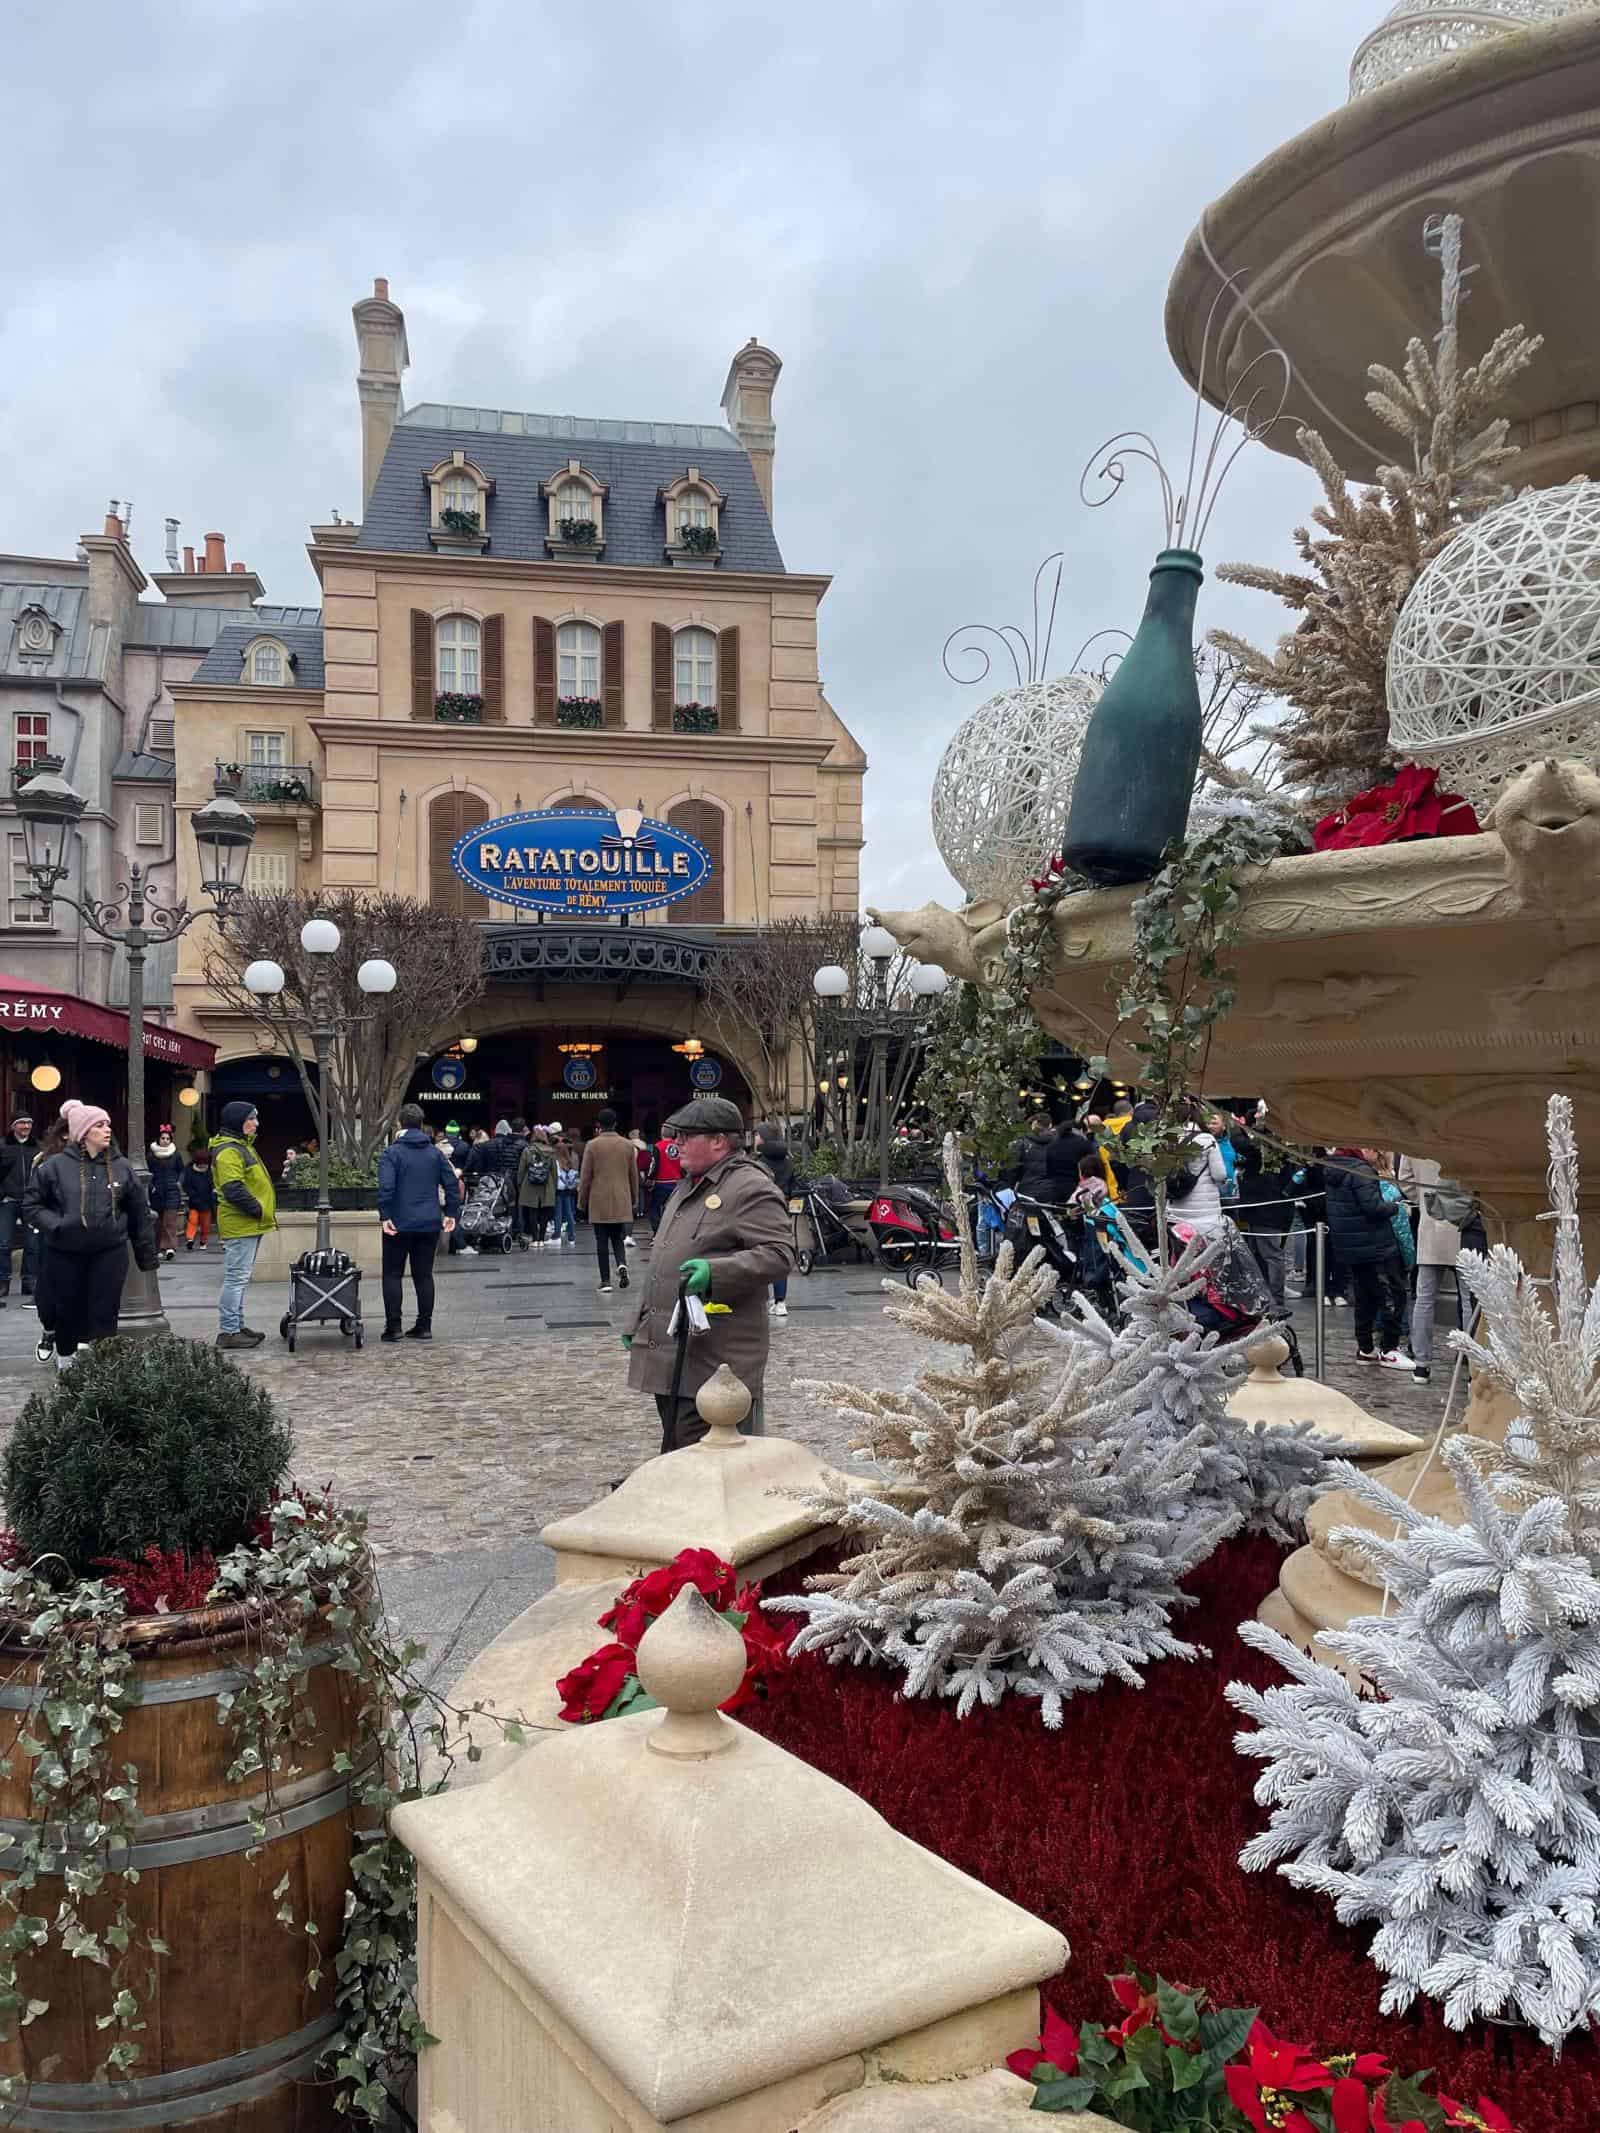 Ratatouille Ride at Disneyland Paris